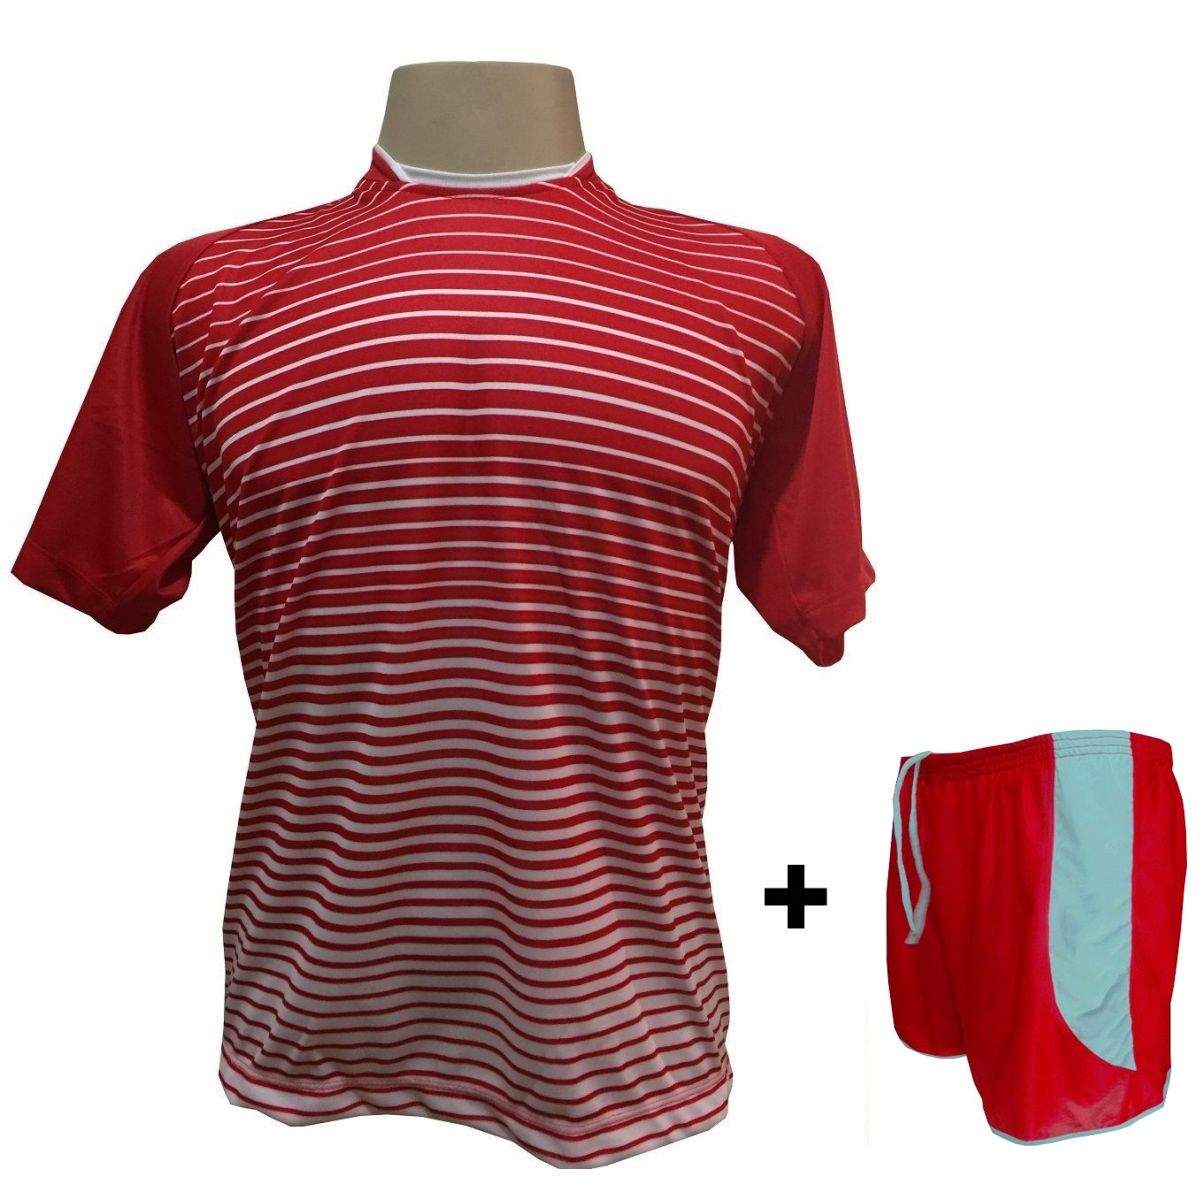 Uniforme Esportivo com 18 camisas modelo City Vermelho/Branco + 18 calções modelo Copa + 1 Goleiro + Brindes